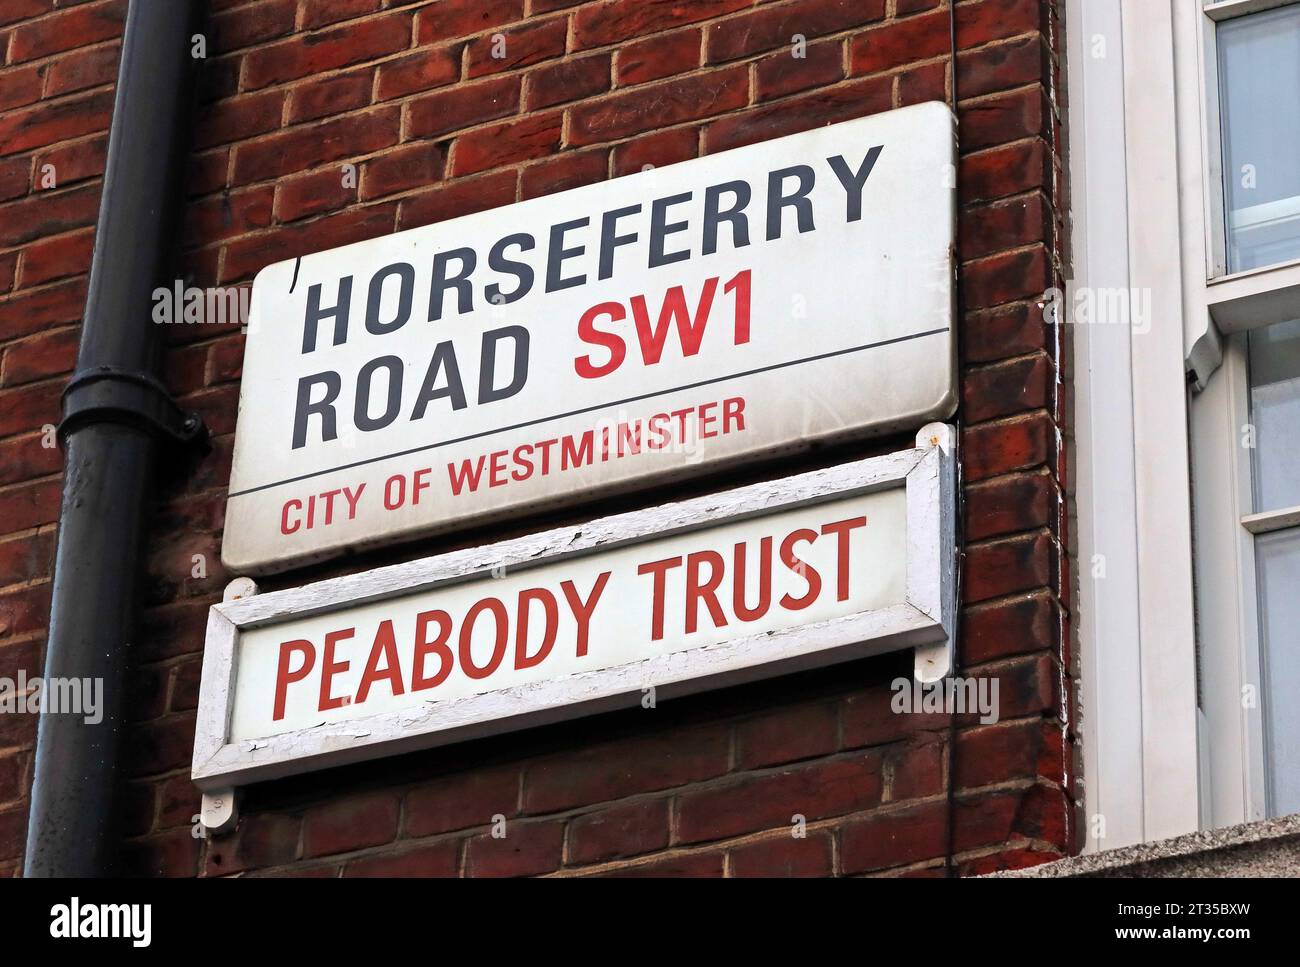 La propriété du Peabody Trust, Horseferry RO, Westminster, Londres, Angleterre, ROYAUME-UNI, SW1P 2EH Banque D'Images